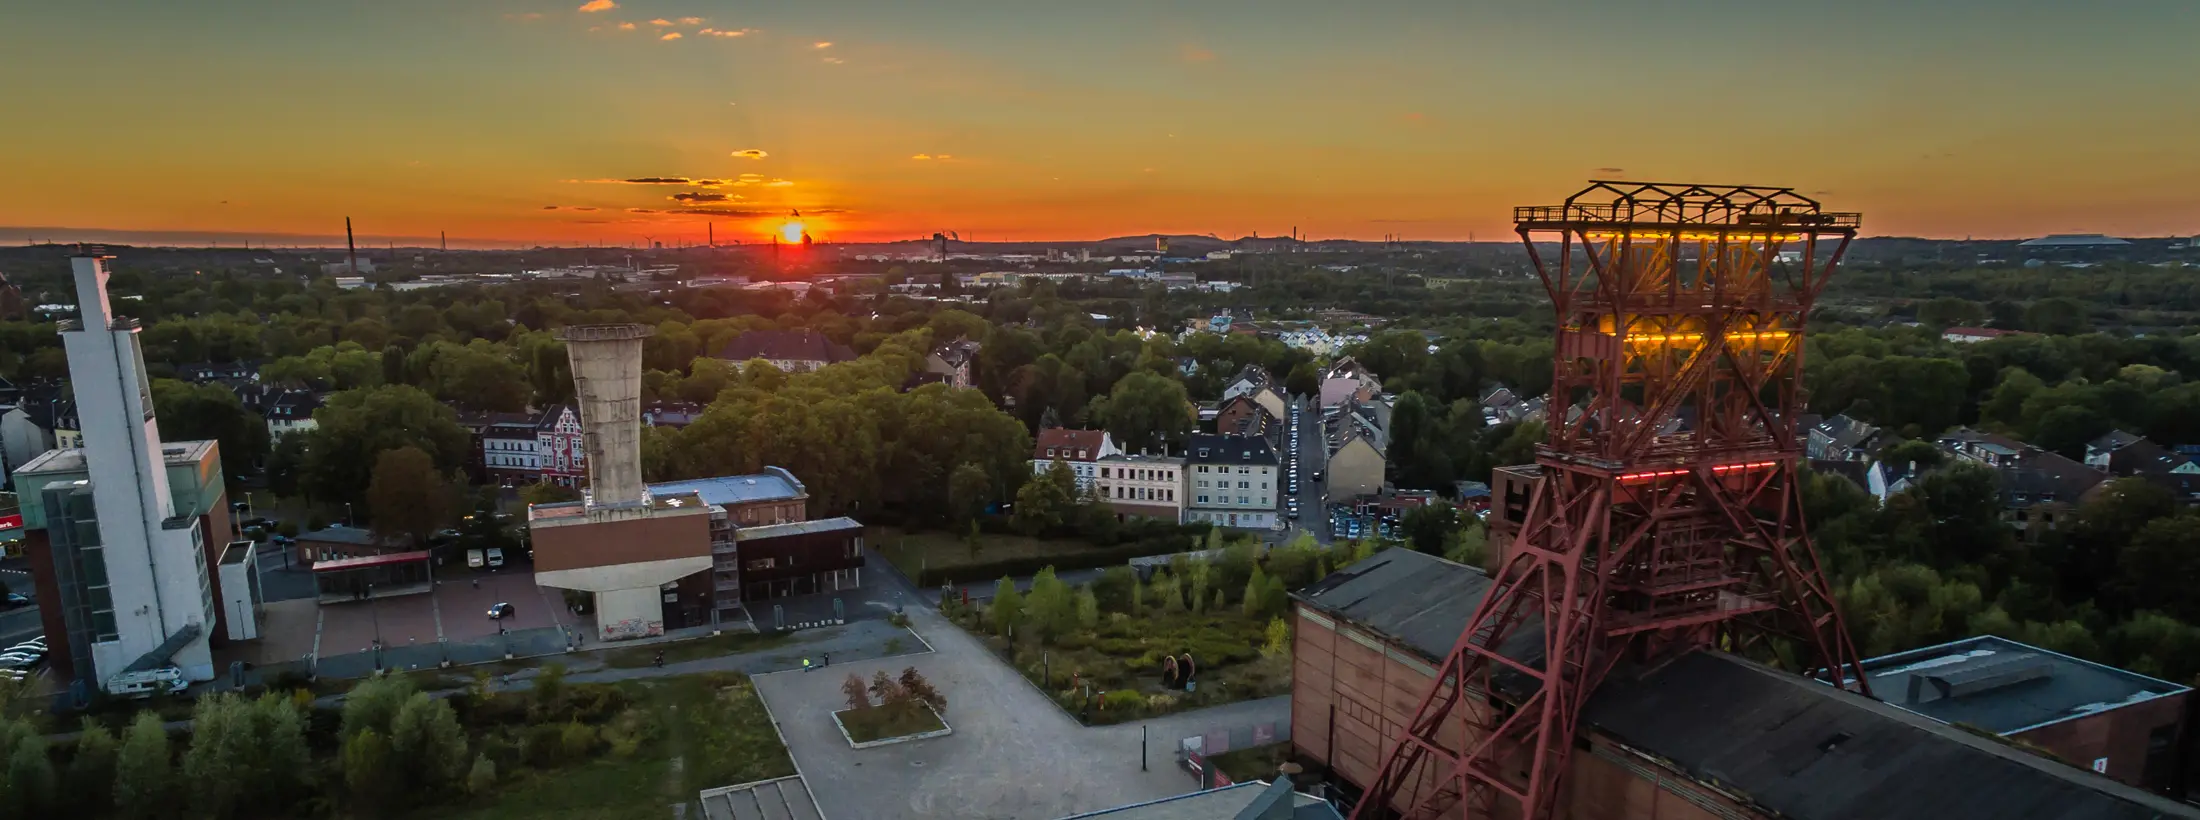 Zeche Consol und der Blick über Gelsenkirchen mit Sonnenuntergang